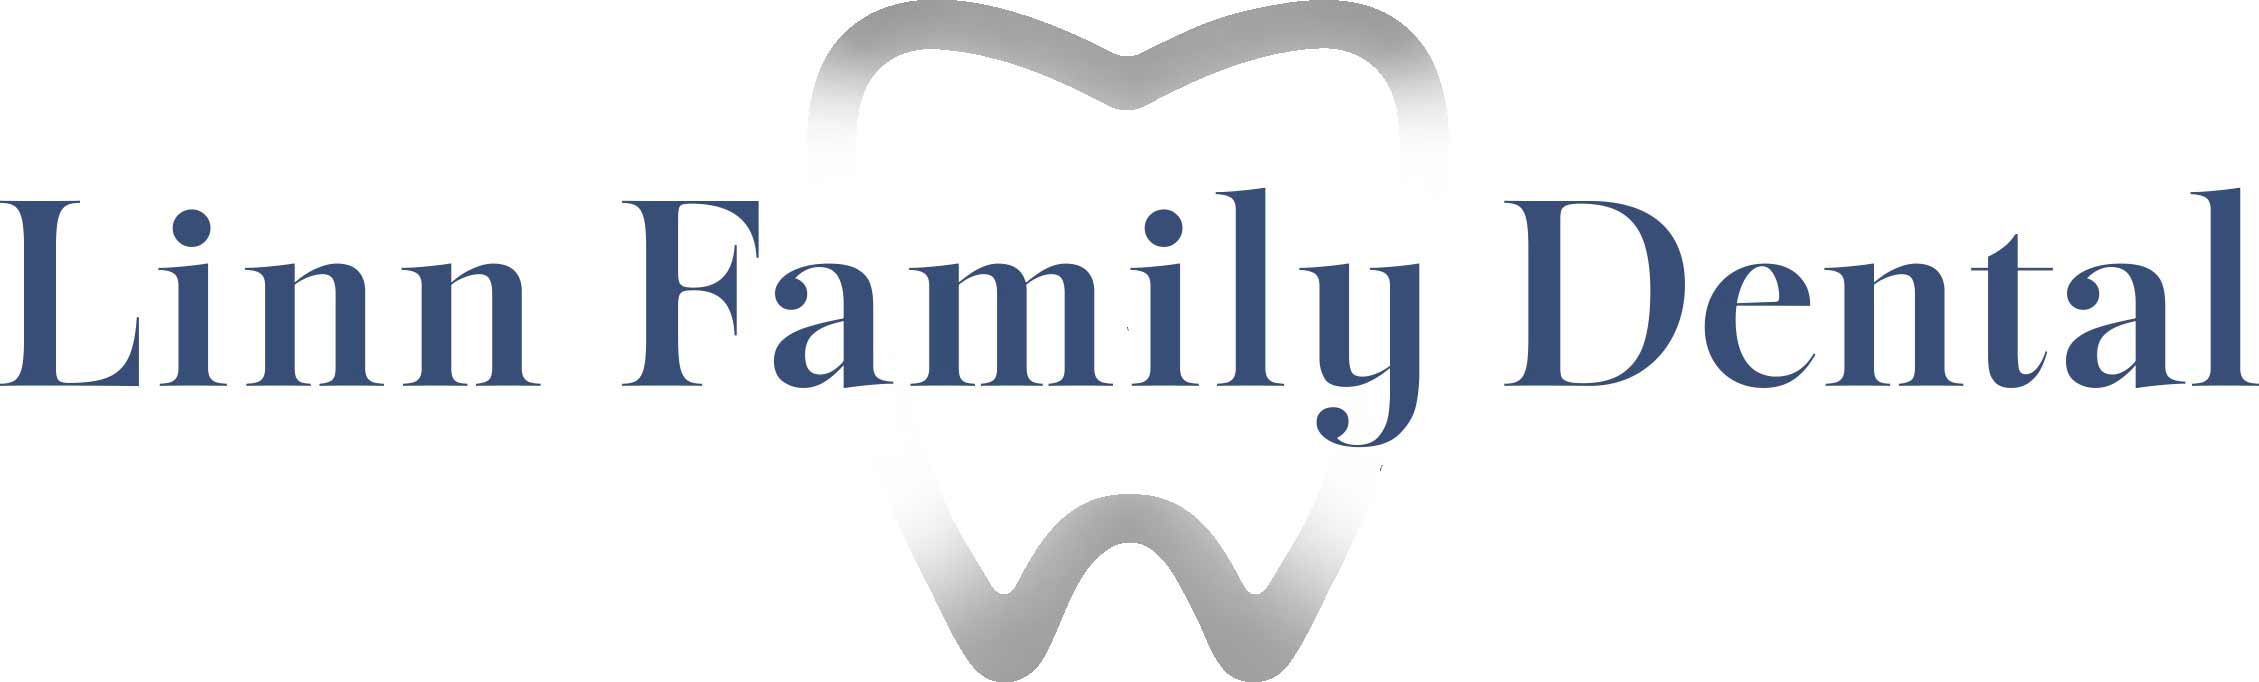 Linn Family dental logo